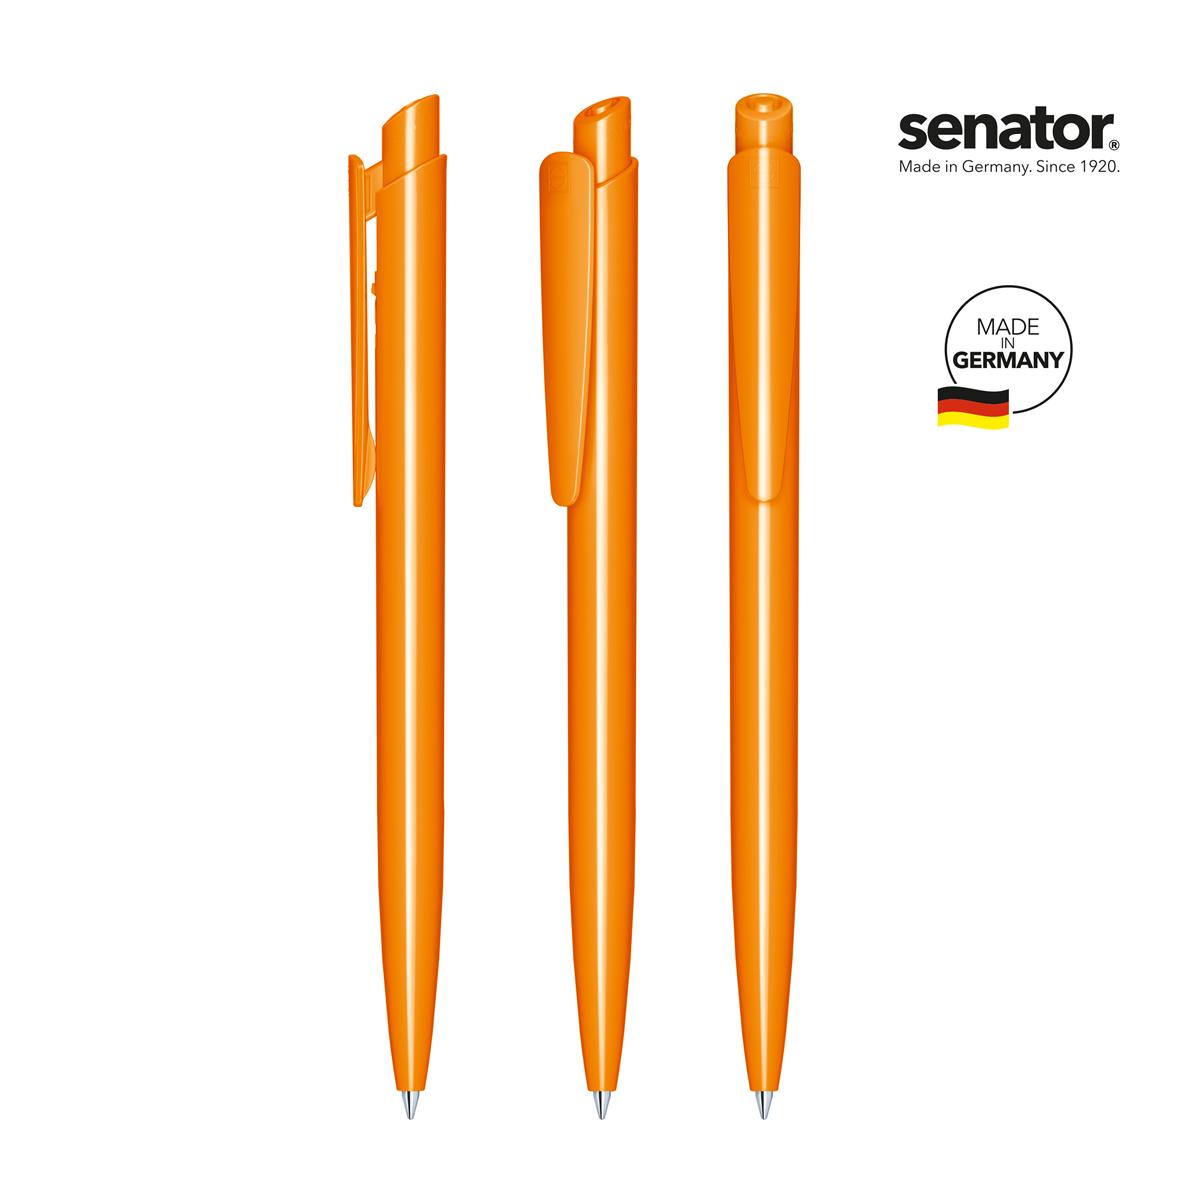 2600-senator-dart-polished-pms-151-5-p